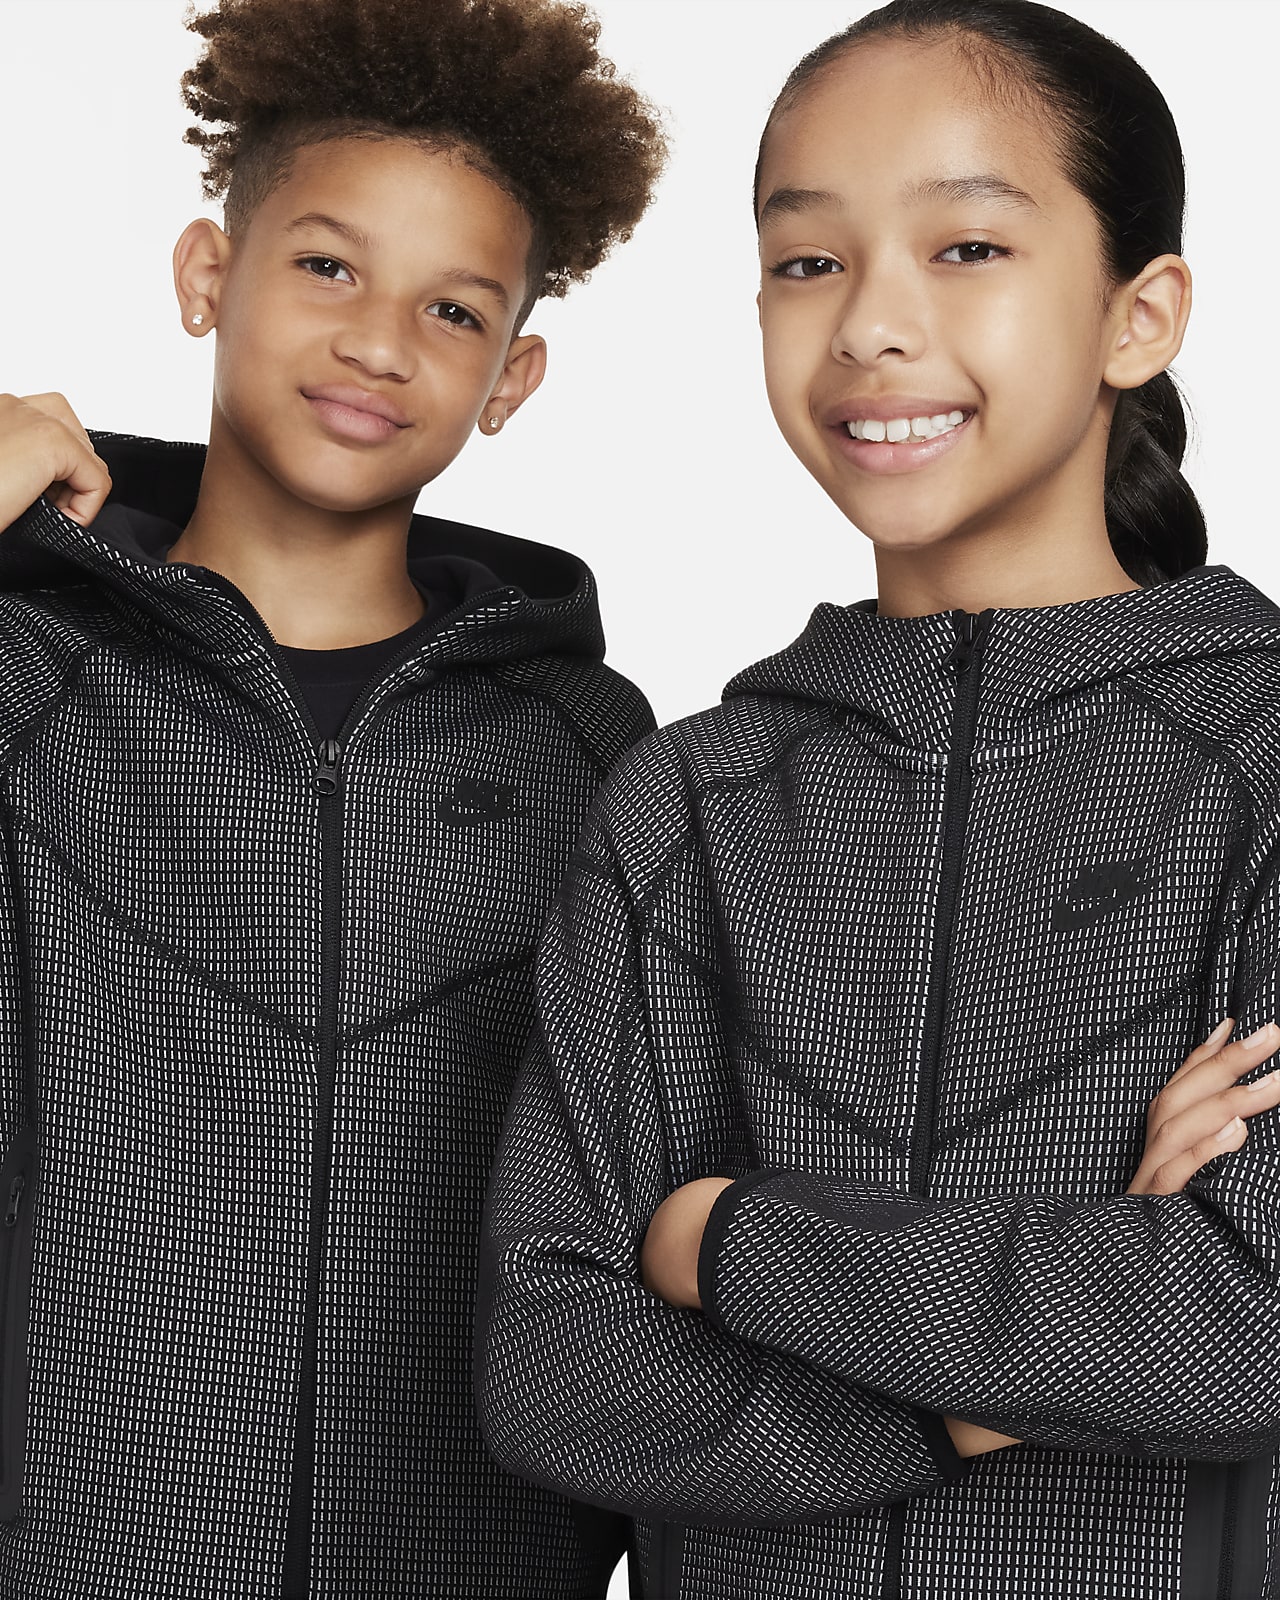 Men's Sportswear Tech Fleece. Nike CA